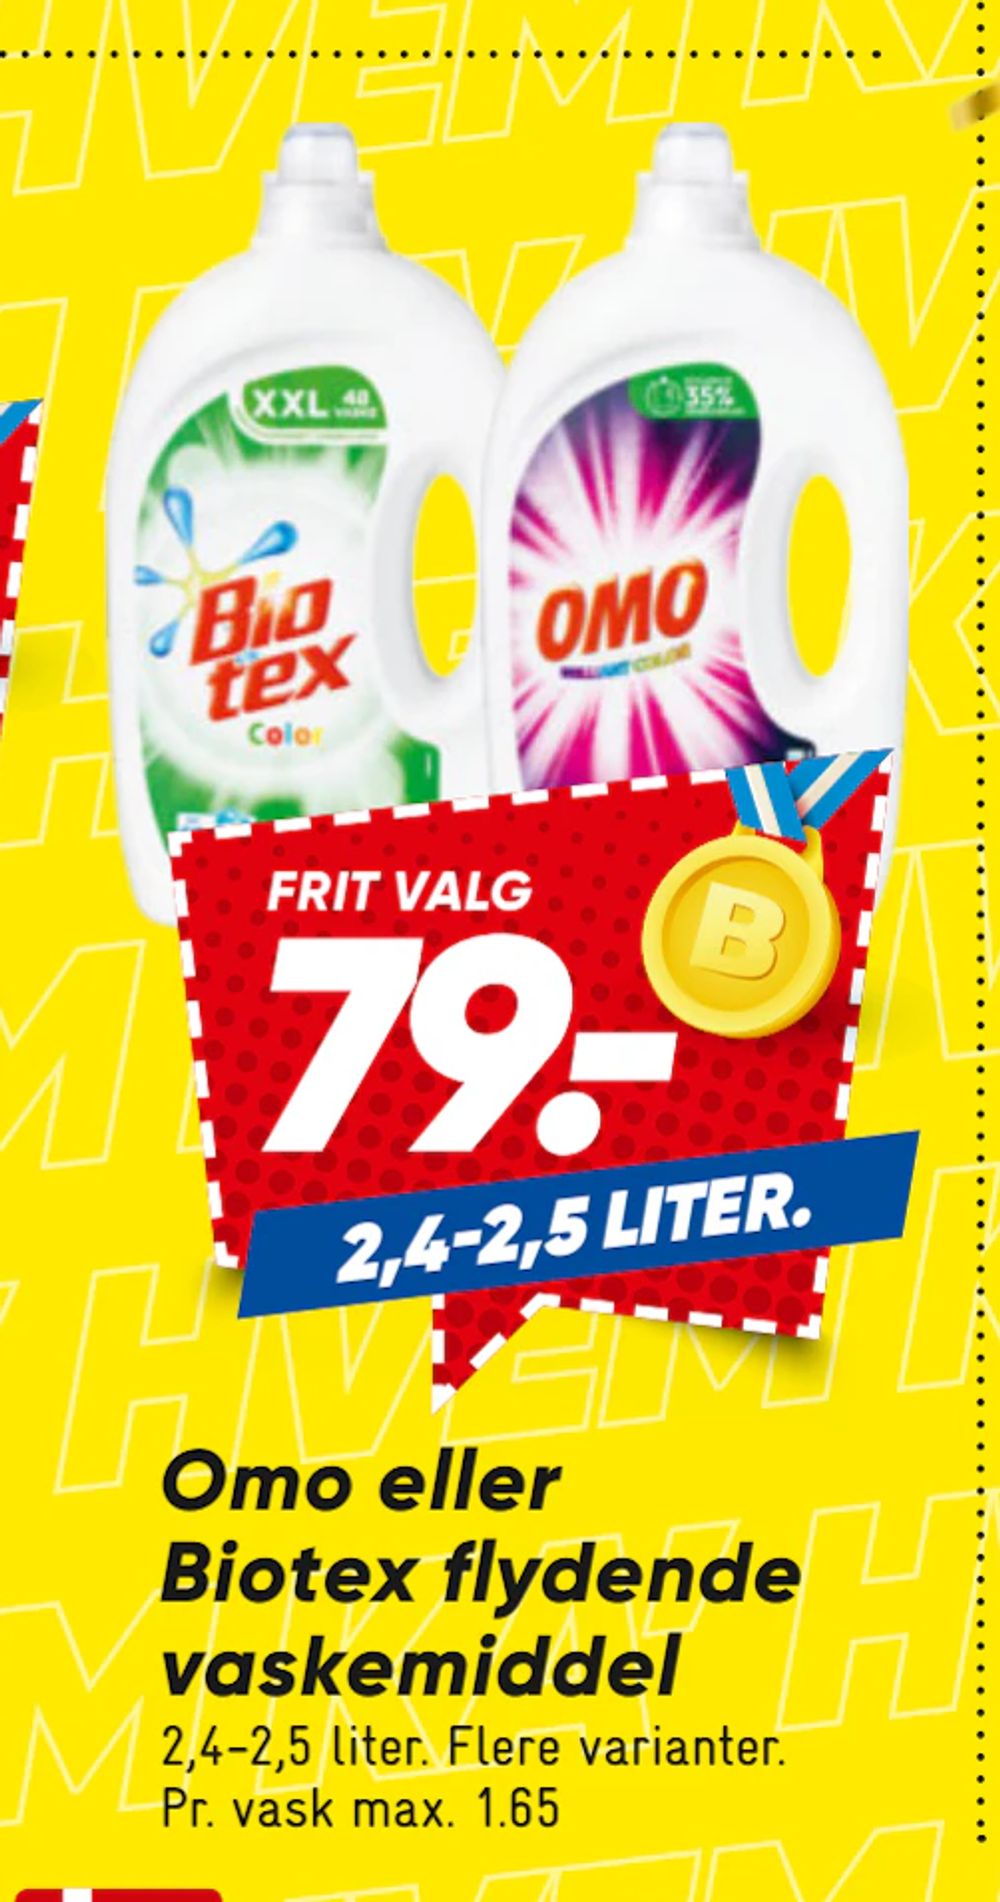 Tilbud på Omo eller Biotex flydende vaskemiddel fra Bilka til 79 kr.